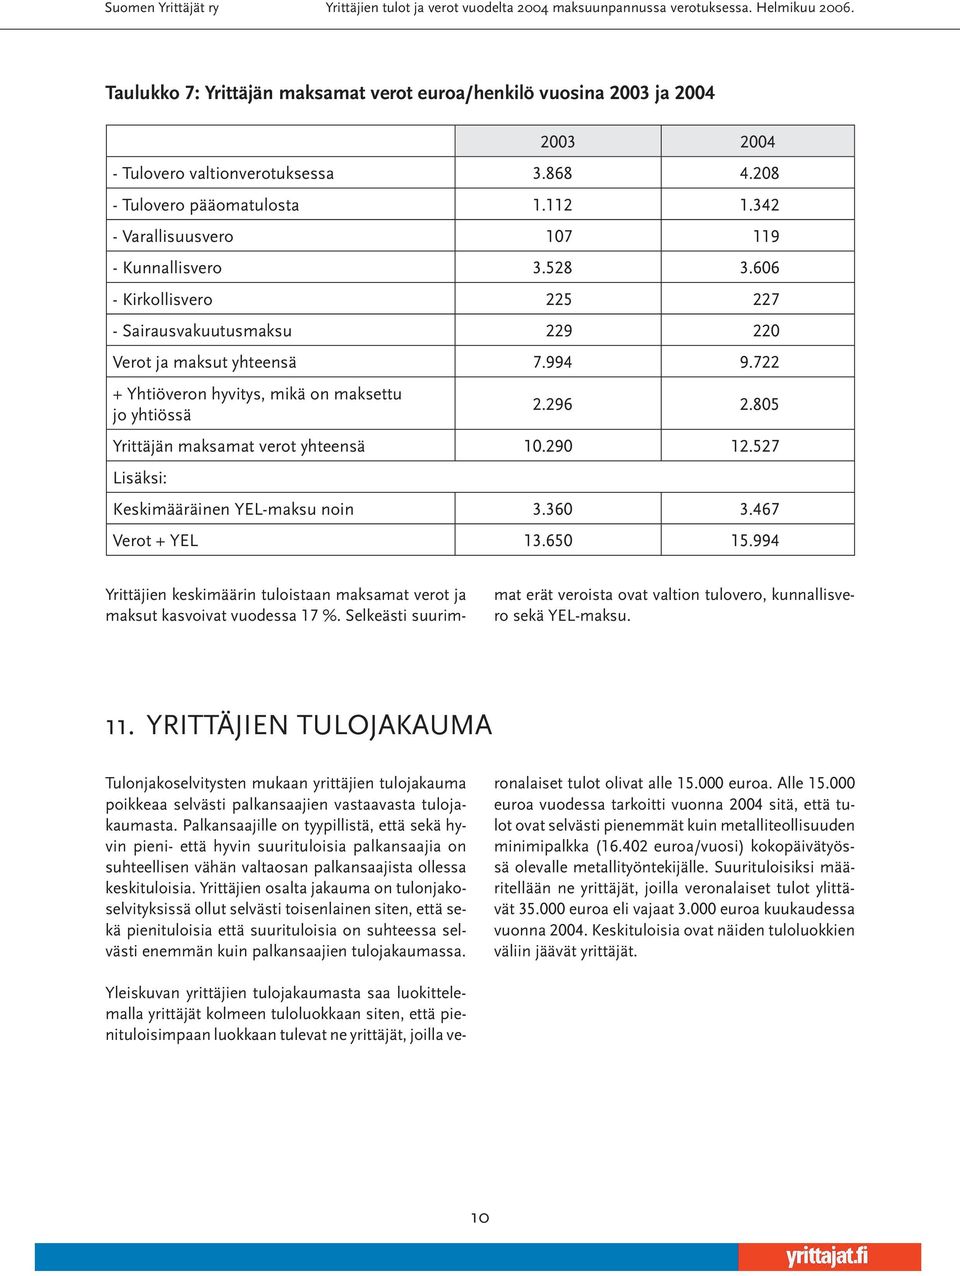 805 Yrittäjän maksamat verot yhteensä 10.290 12.527 Lisäksi: Keskimääräinen YEL-maksu noin 3.360 3.467 Verot + YEL 13.650 15.